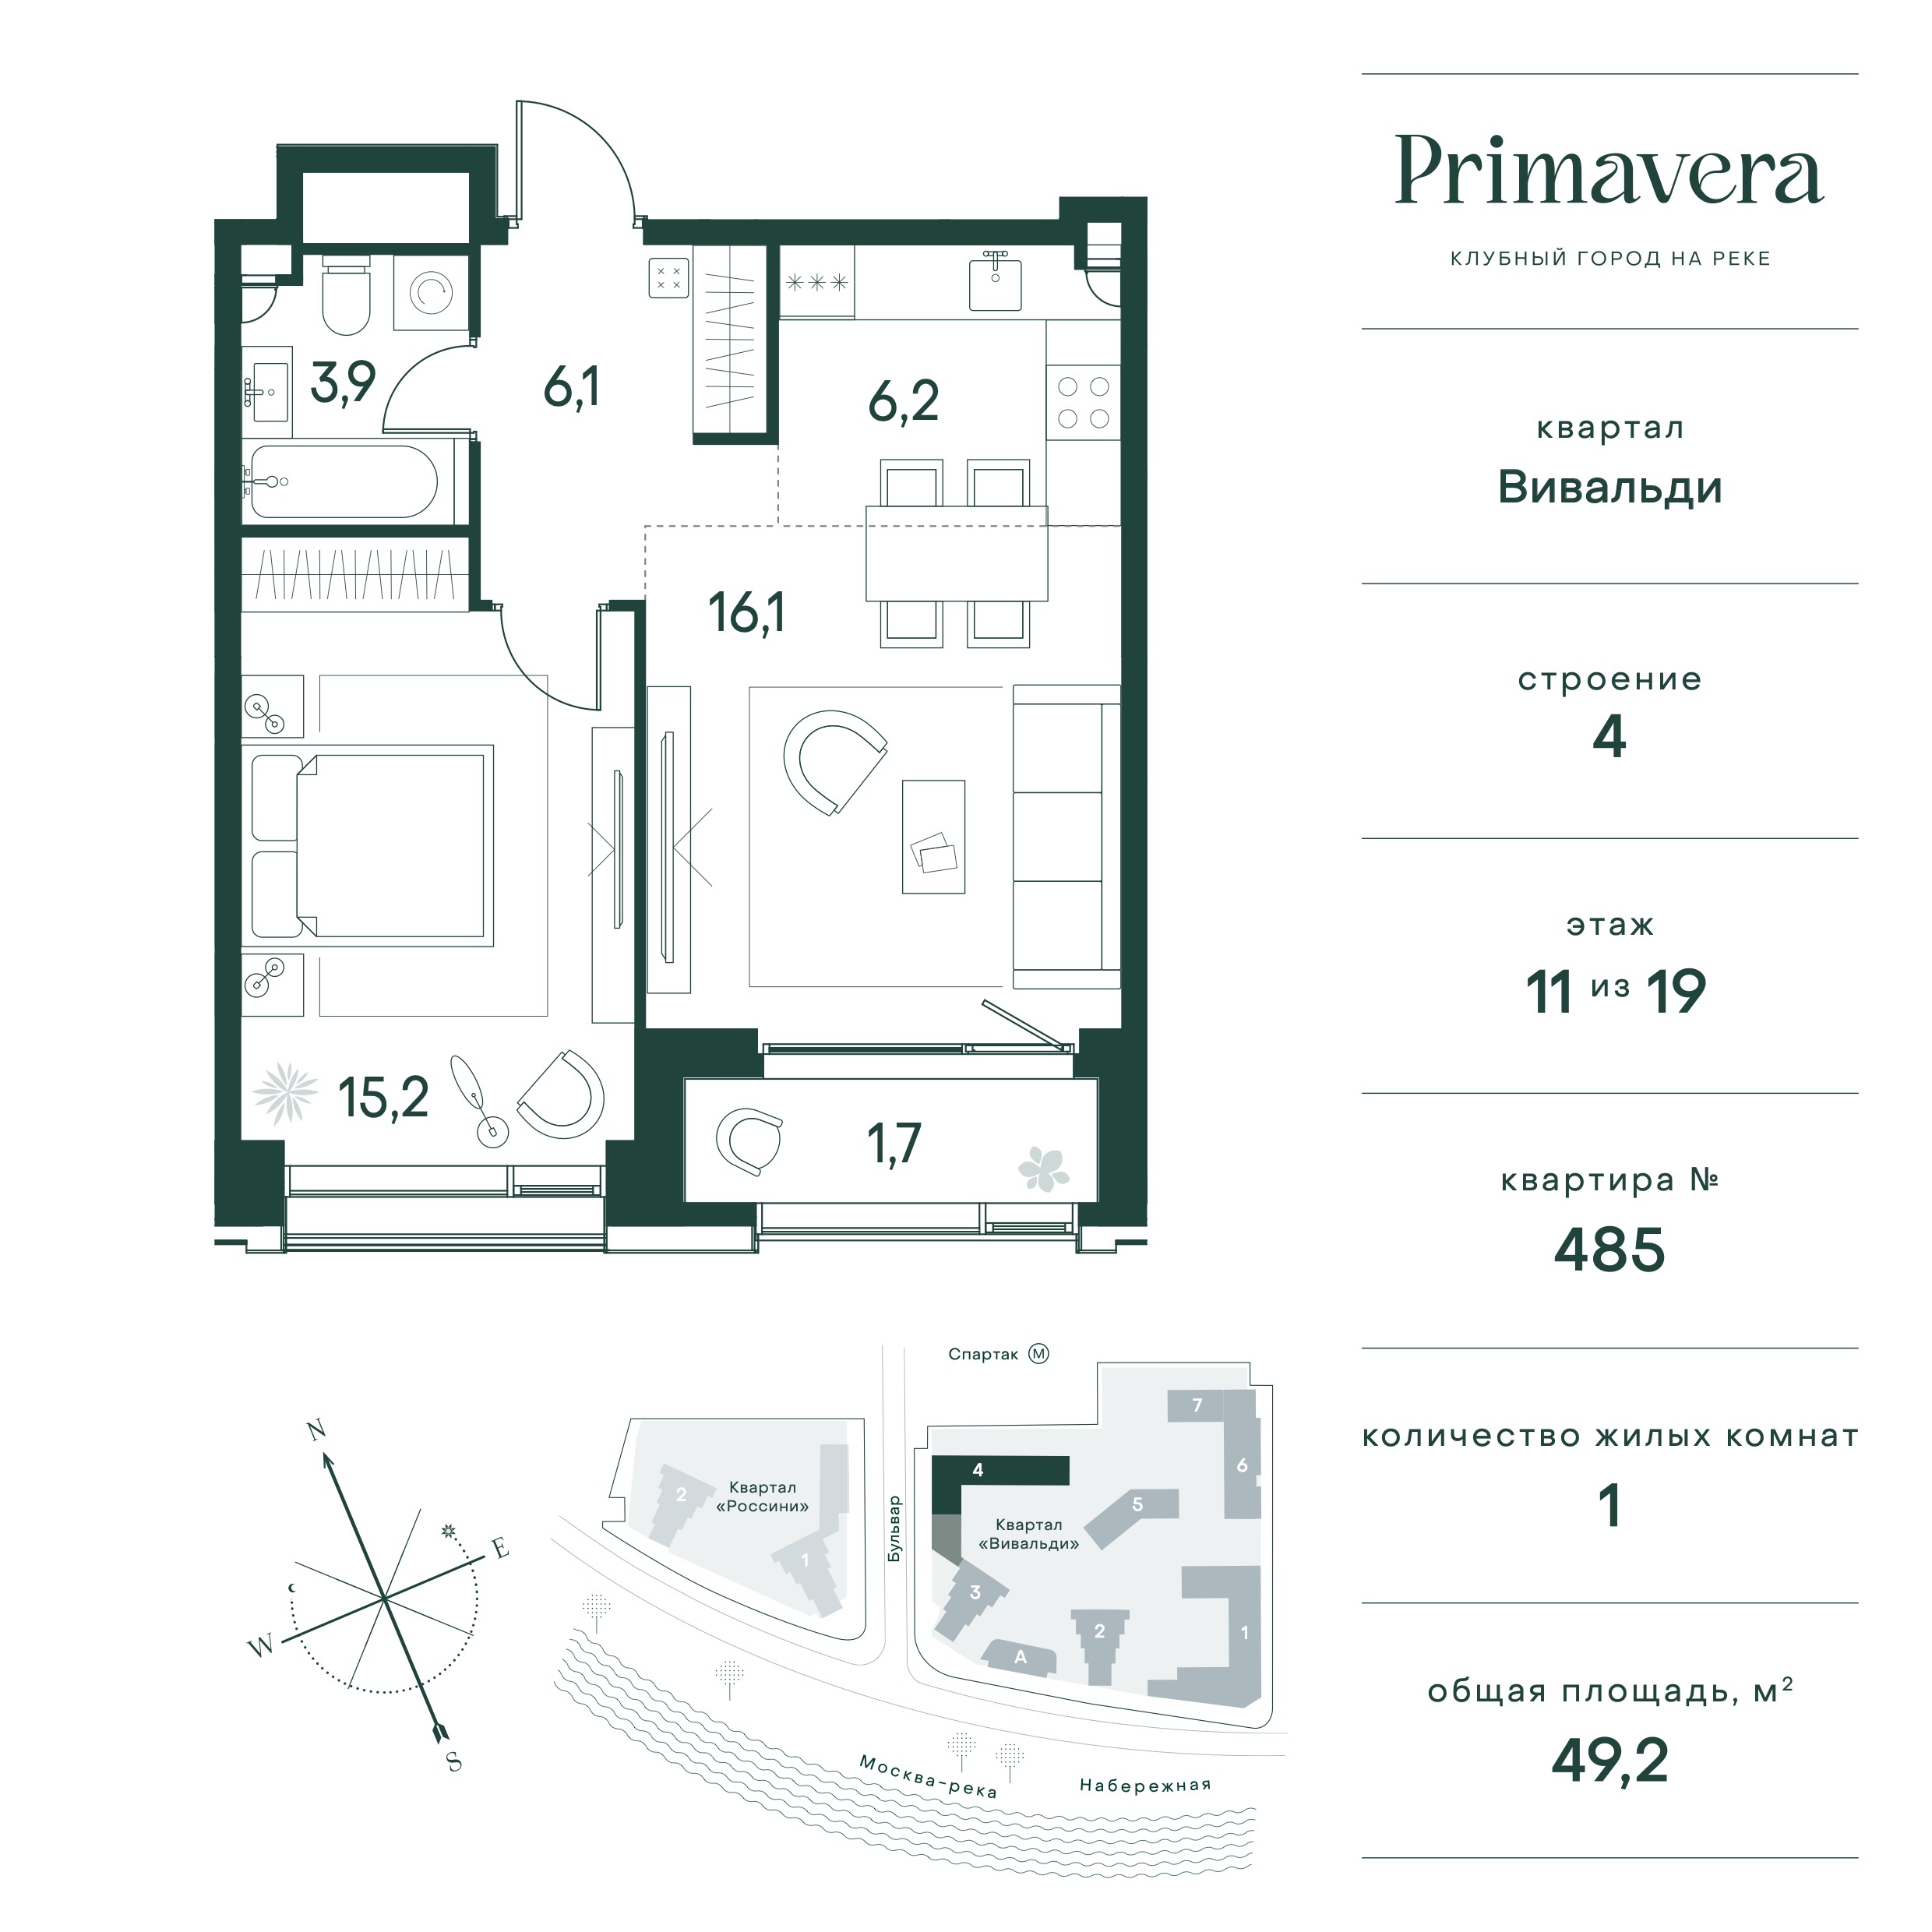 Планировка Квартира с 1 спальней 49.2 м2 в ЖК Primavera